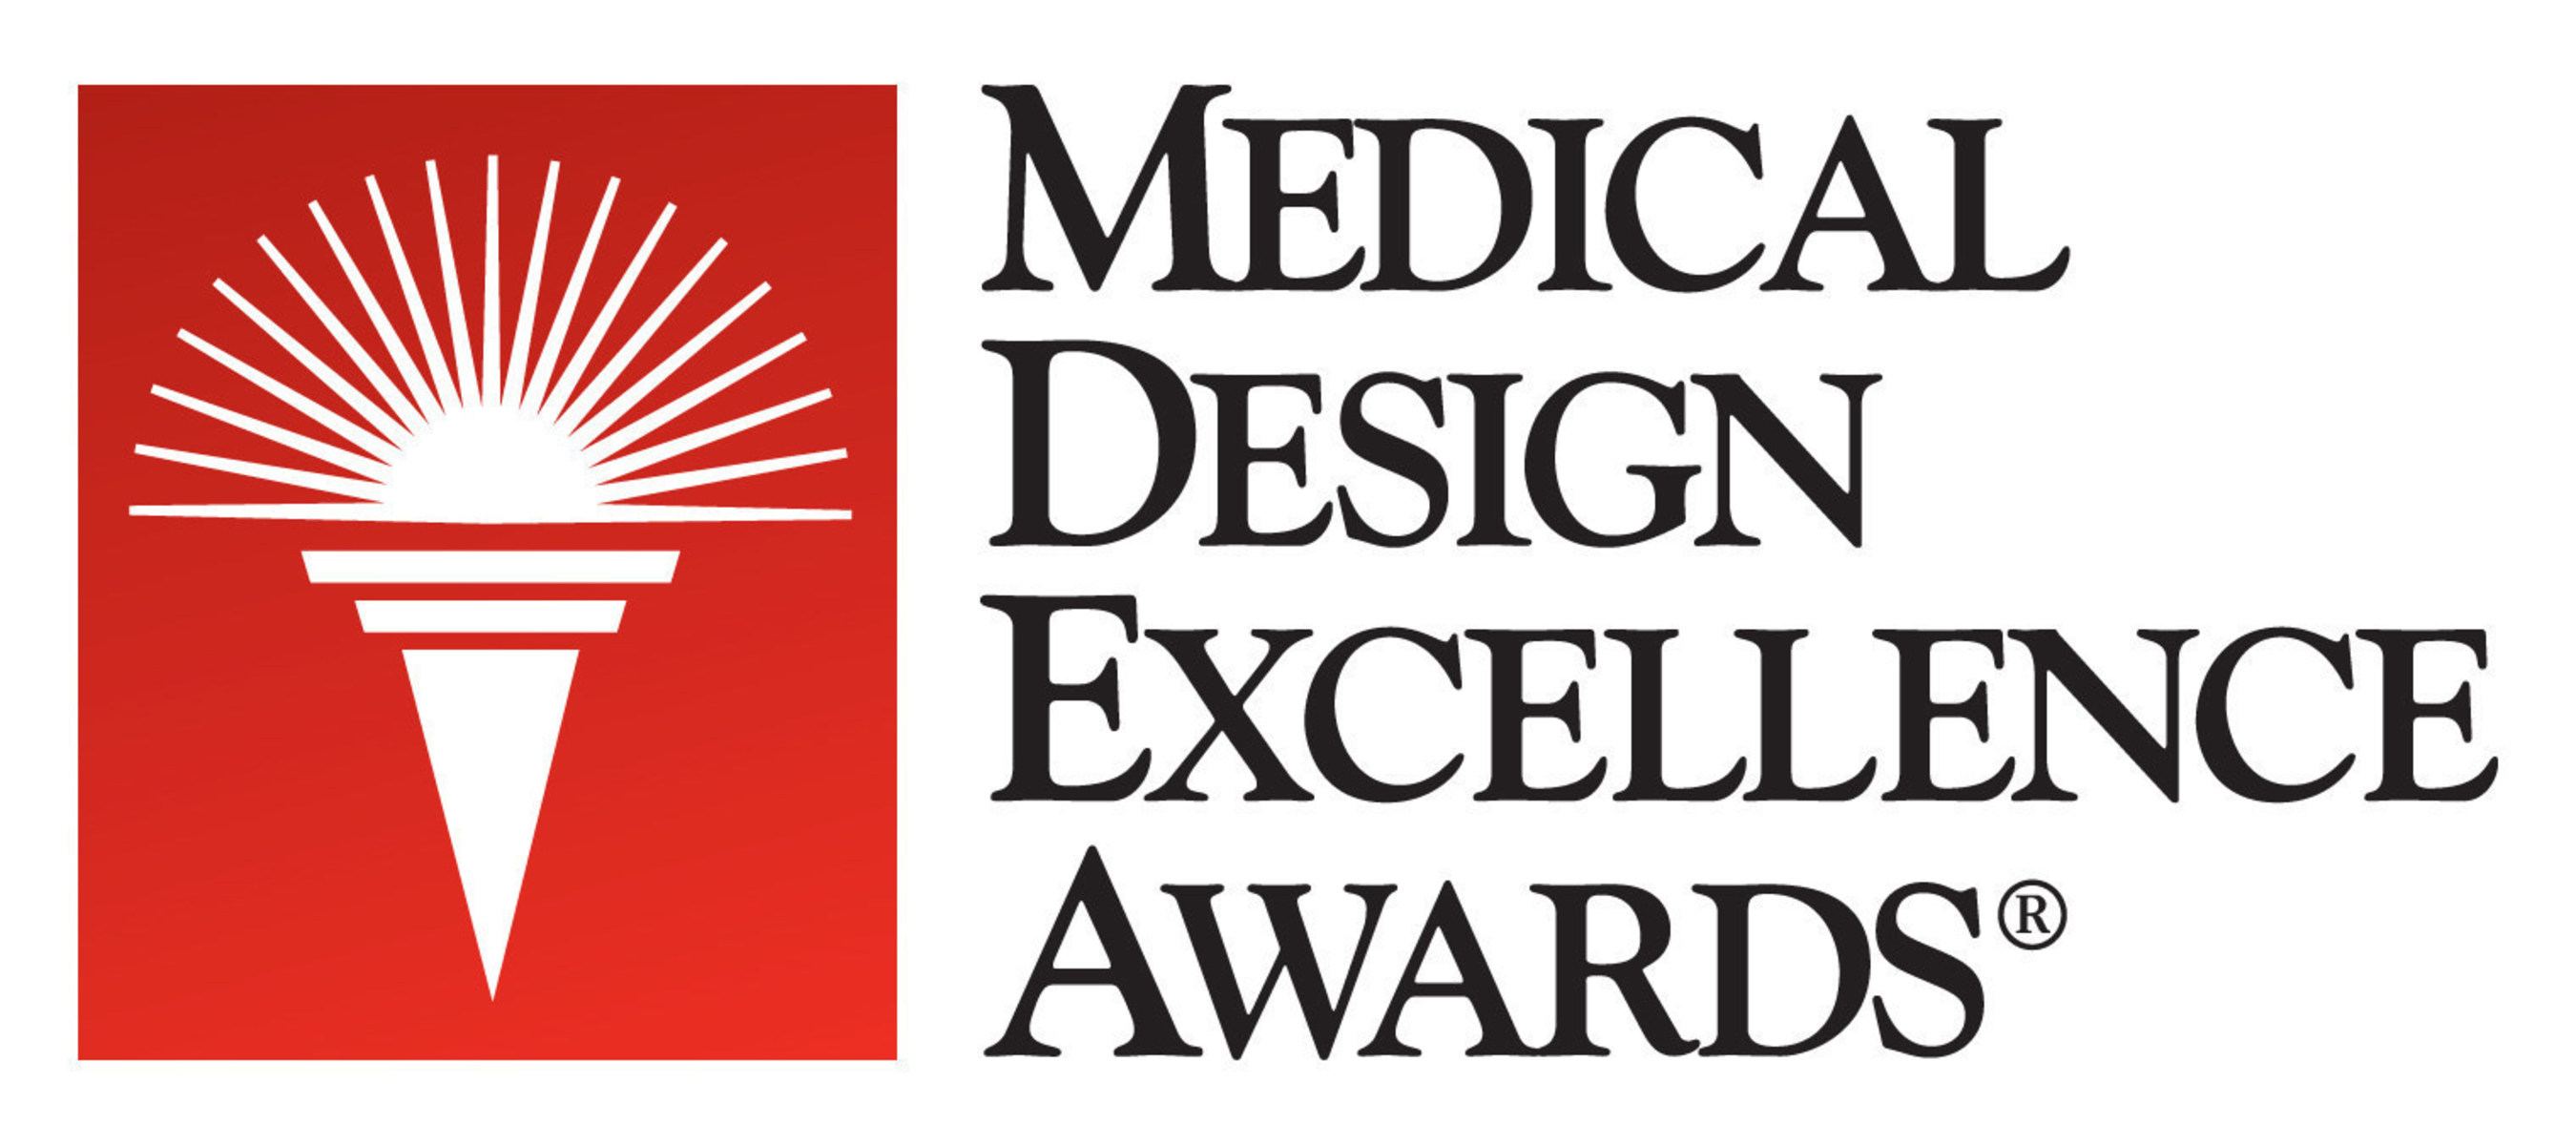 Medical Design Excellence Award (MDEA)